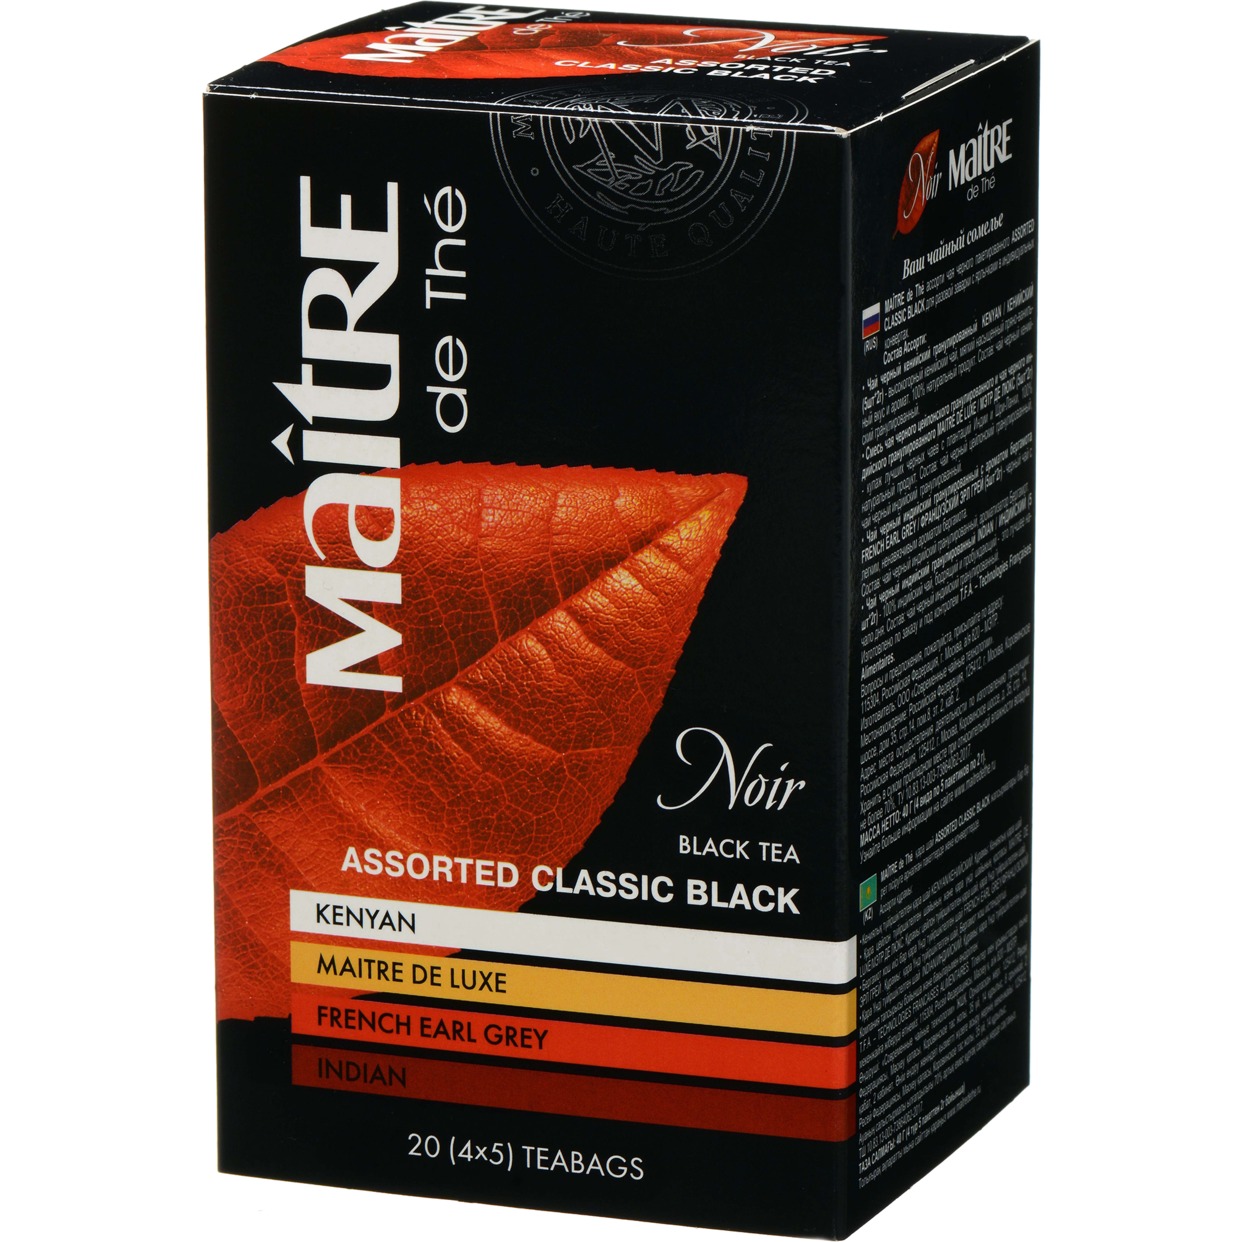 Ассорти чая чёрного пакетированного ASSORTED CLASSIC BLACK "Maitre de the" 20пак*2г (нетто 40г).